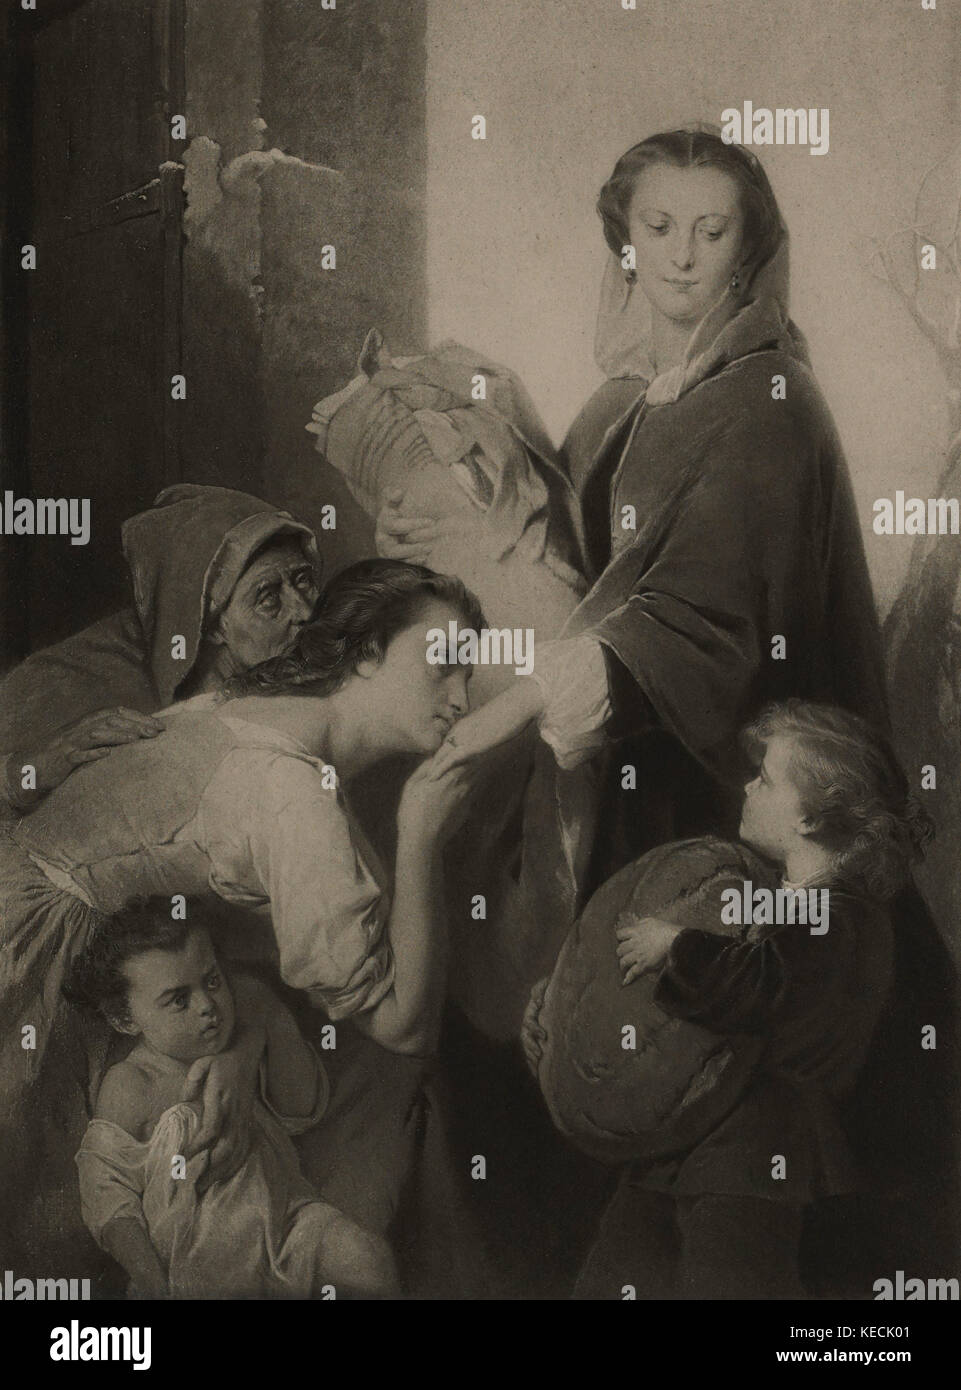 La charité, photogravure impression à partir de la peinture originale par Edouard dubufe, les chefs-d'œuvre de l'art français par Louis Viardot, publié par gravure goupil et cie, Paris, 1882, gebbie & Co., Philadelphia, 1883 Banque D'Images